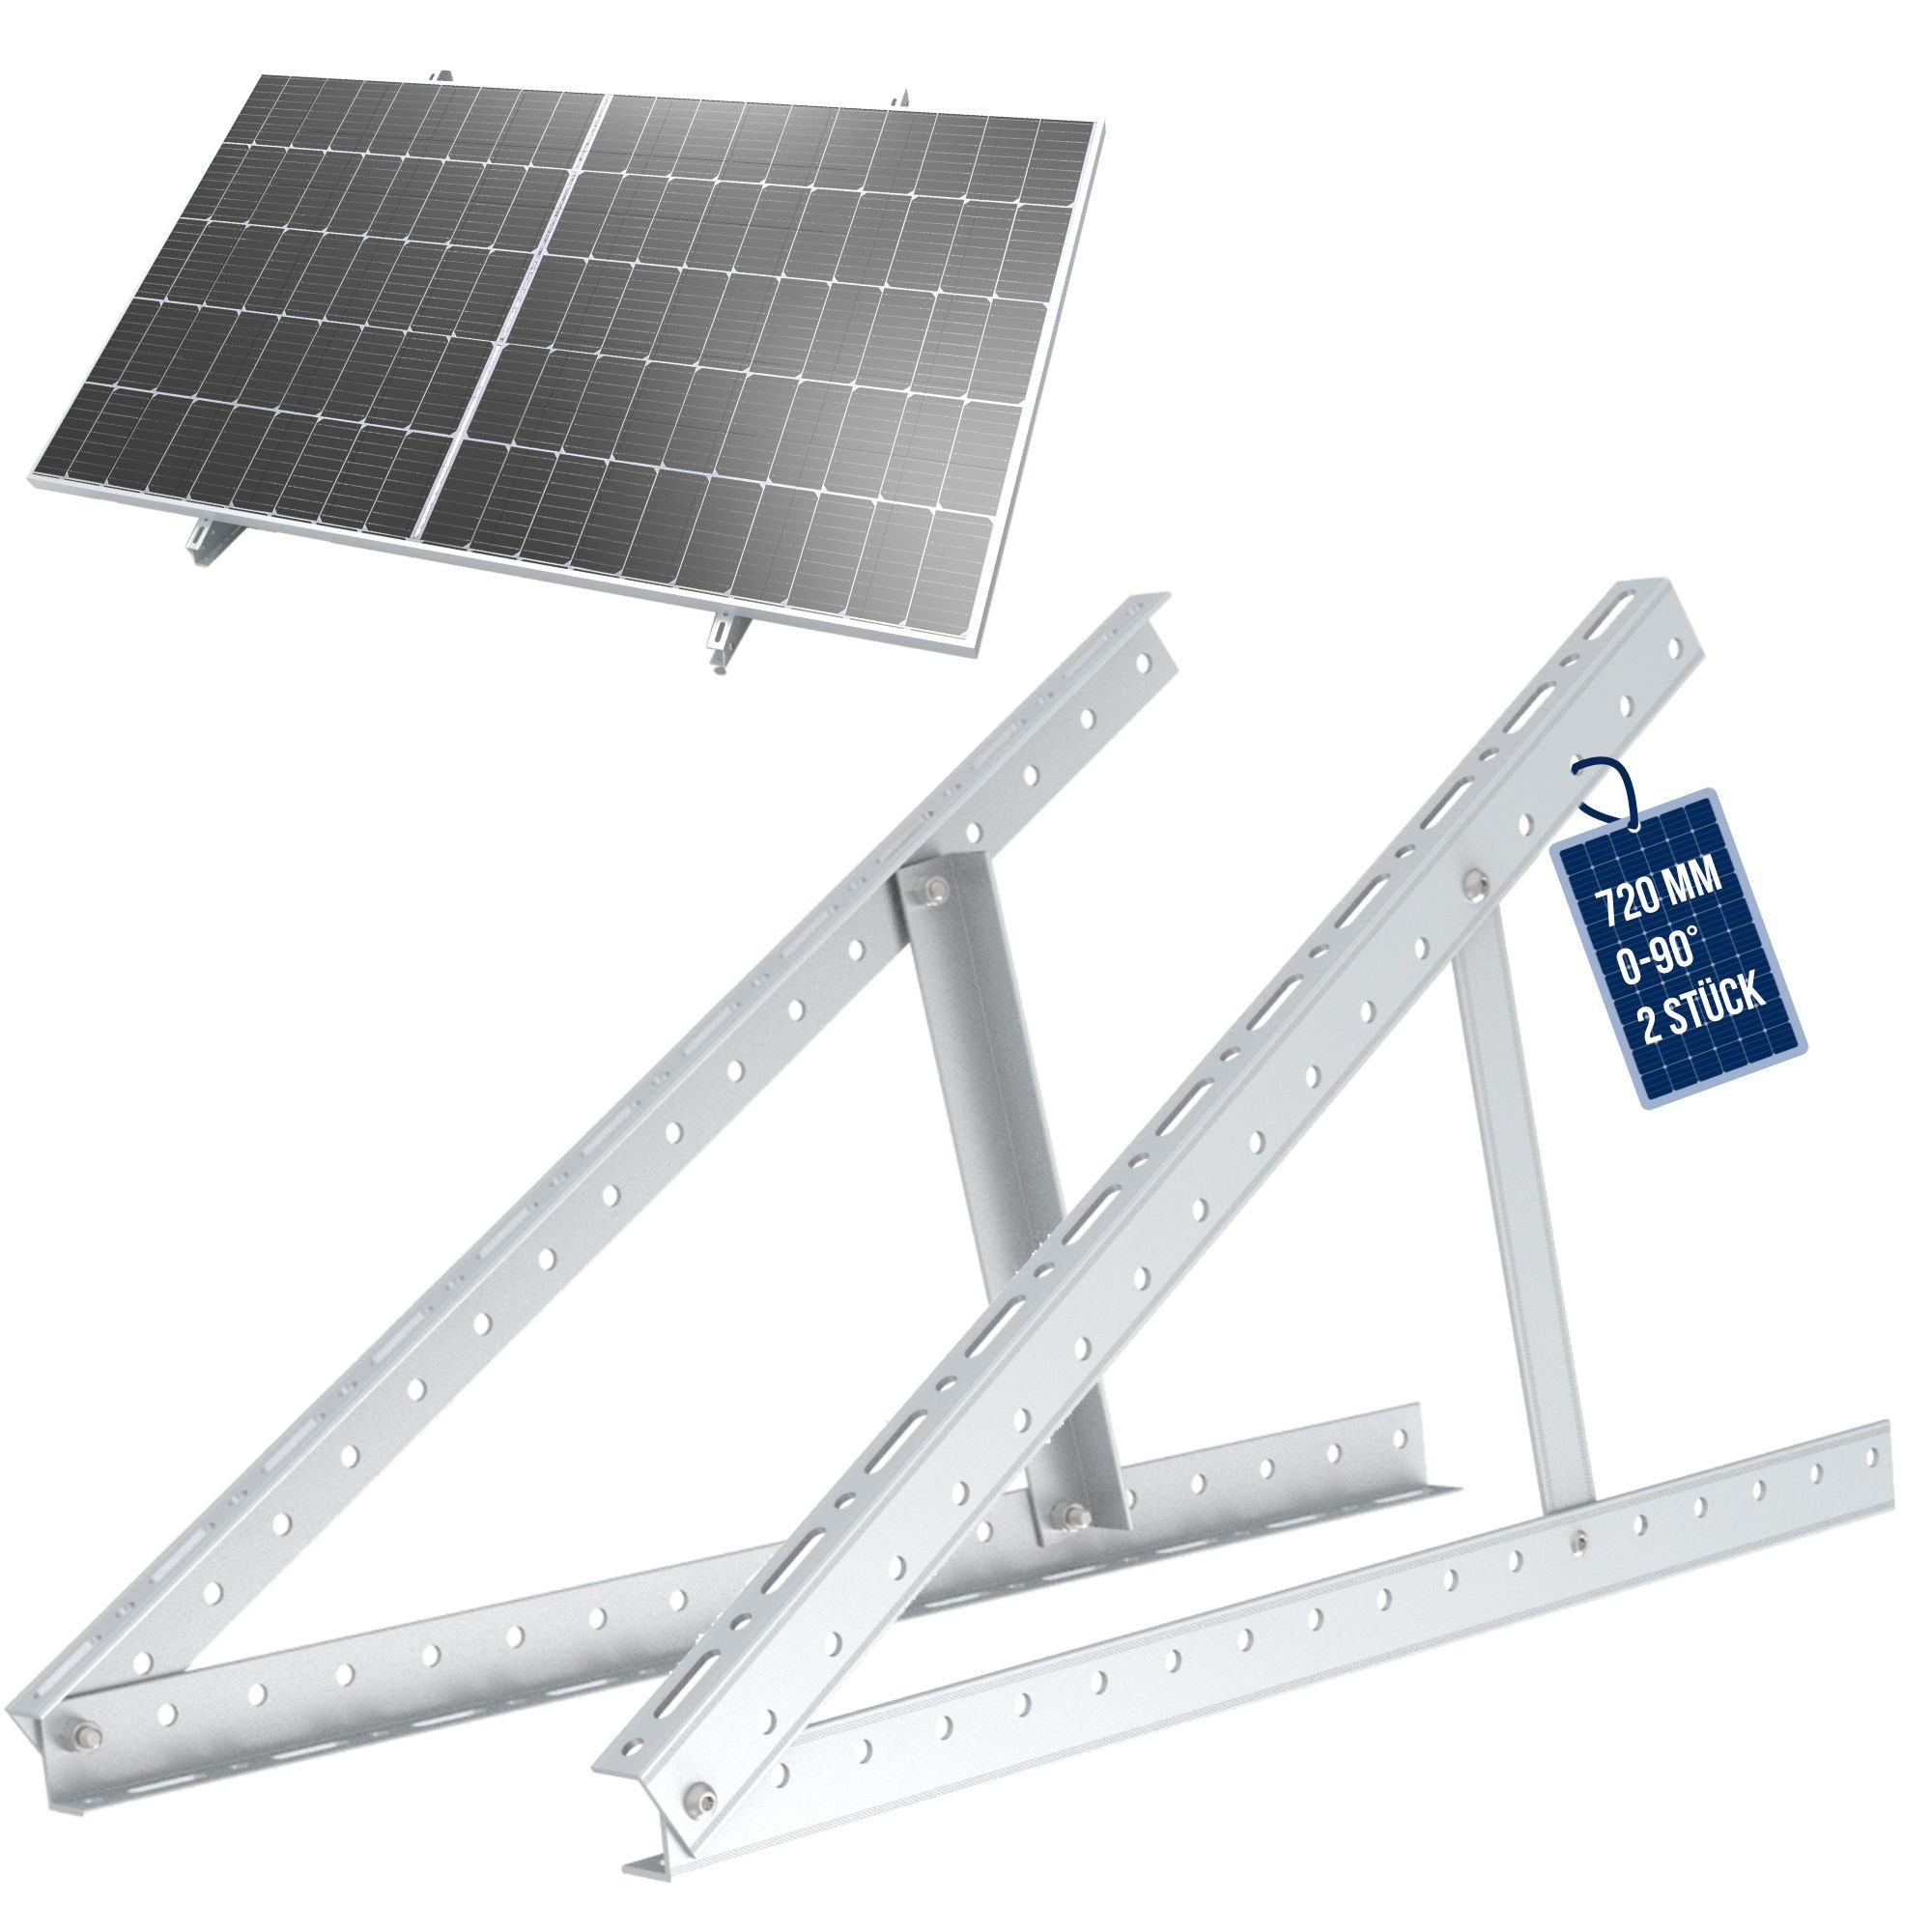 NuaSol NuaFix Panel Aufständerung Flachdach Solarmodul-Halterung, (Set, 720 mm)